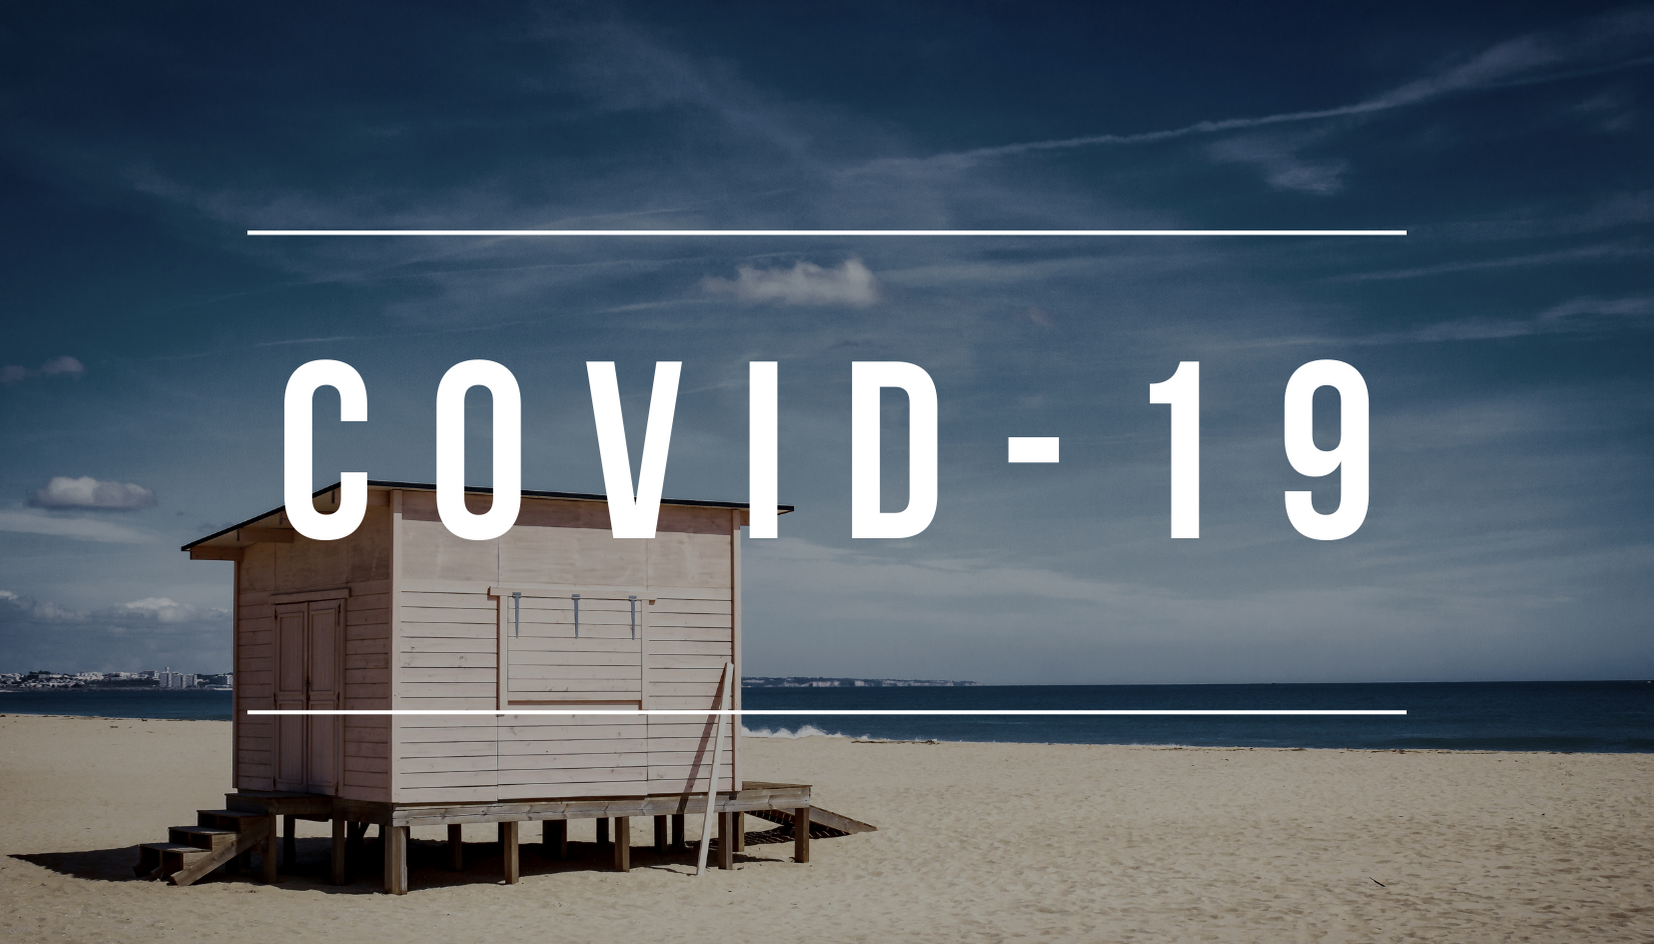 Existem mais de 400 casos activos de infecção por COVID-19 no Algarve. Concelho de Lagos atinge recorde de casos diários